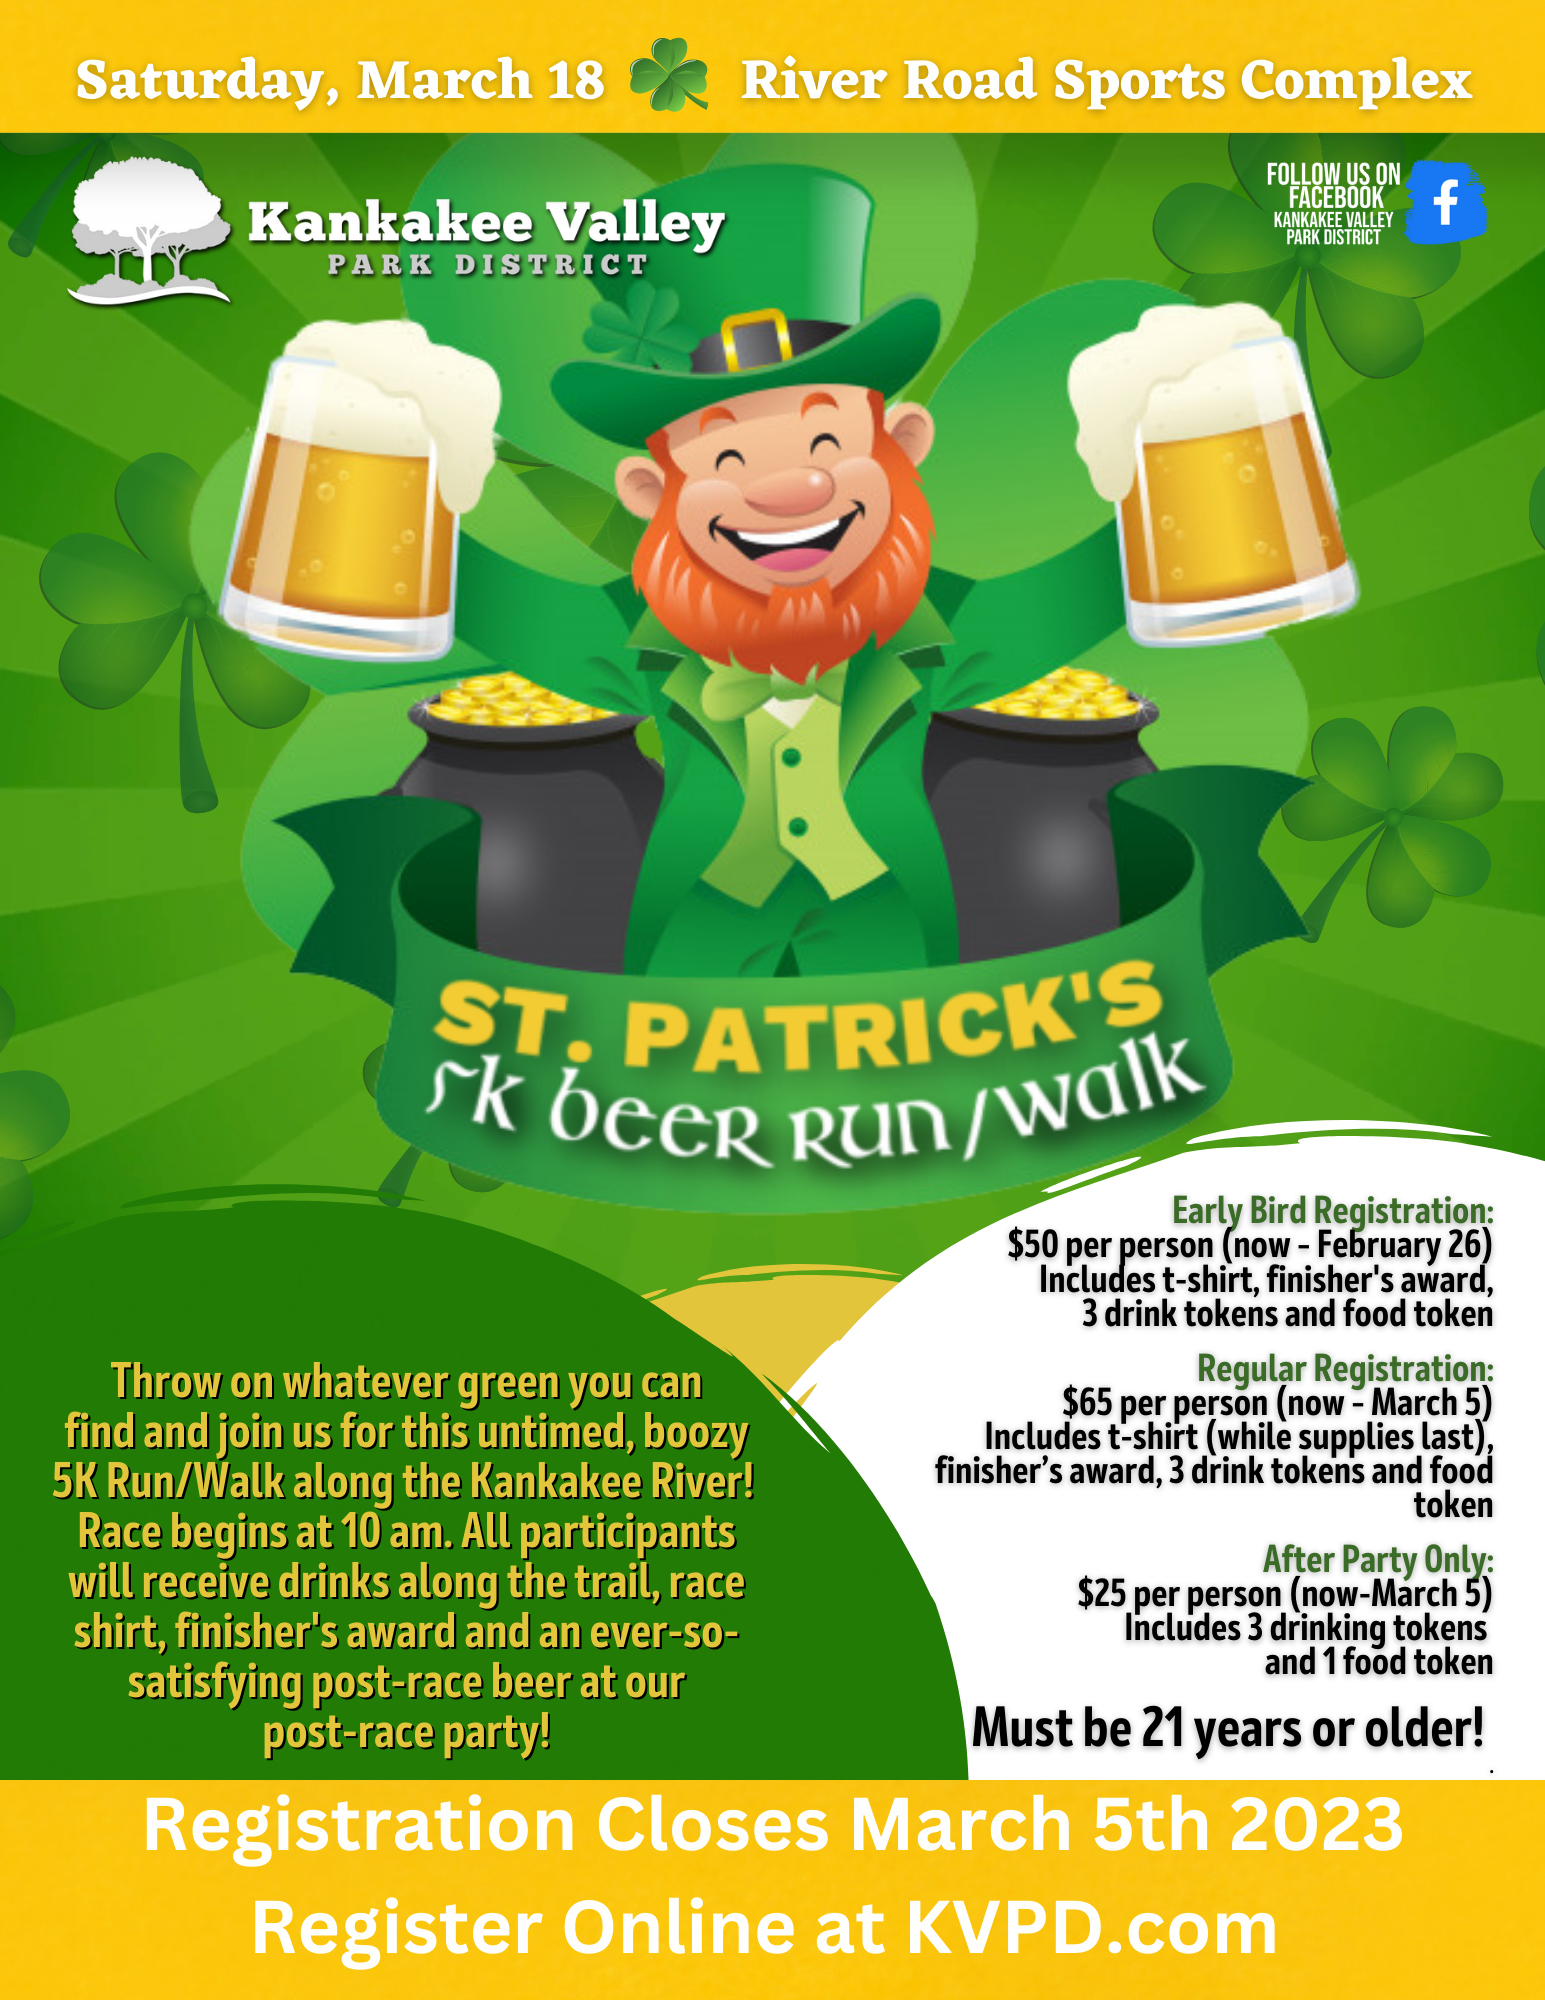 St. Patricks 5K Beer Run/Walk